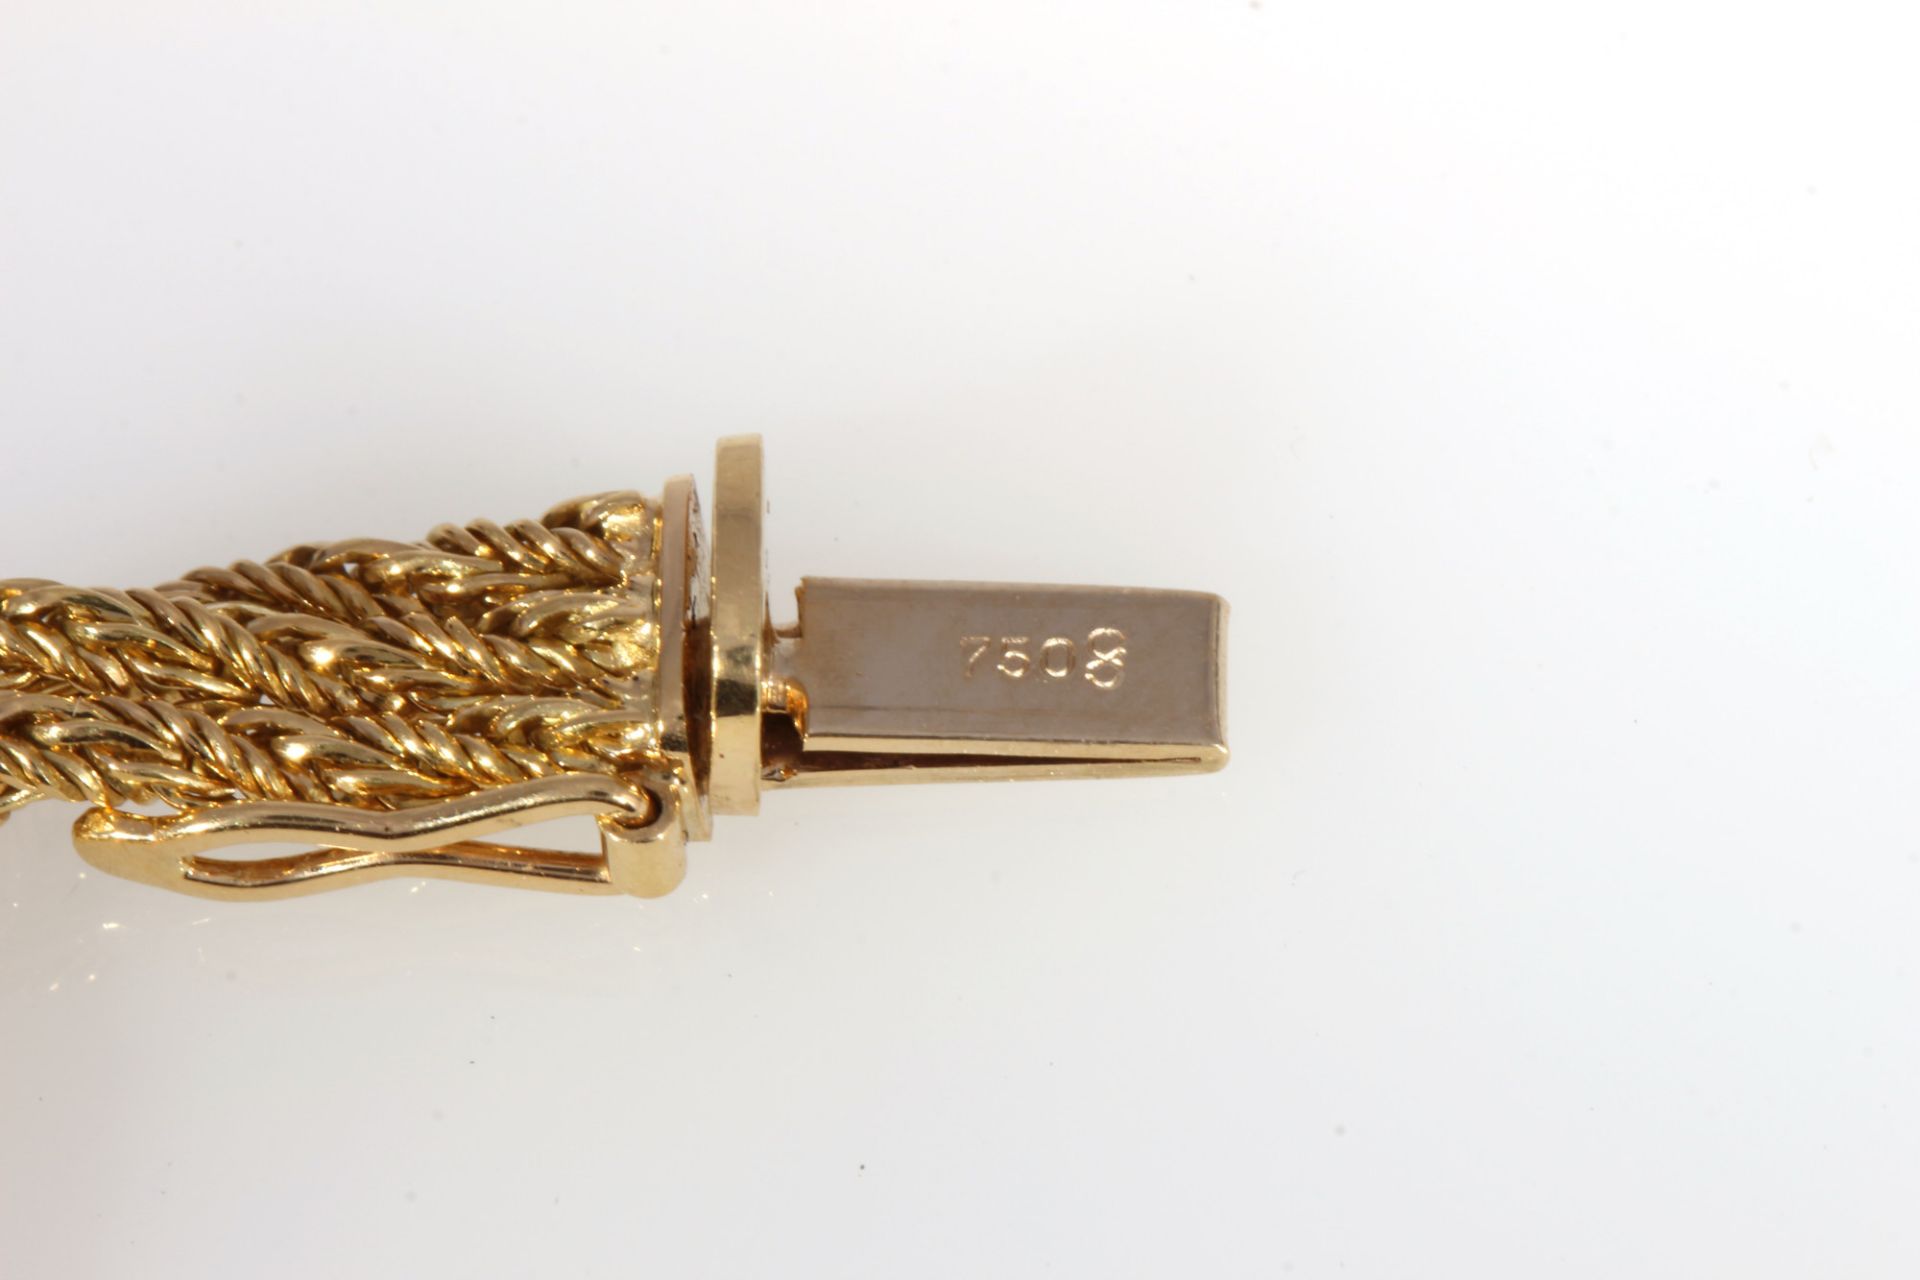 750 Gold / 950 Platin Brillanten Collier und Armband, Kordel, 18K gold / 950 platinum diamond neck - Bild 5 aus 5